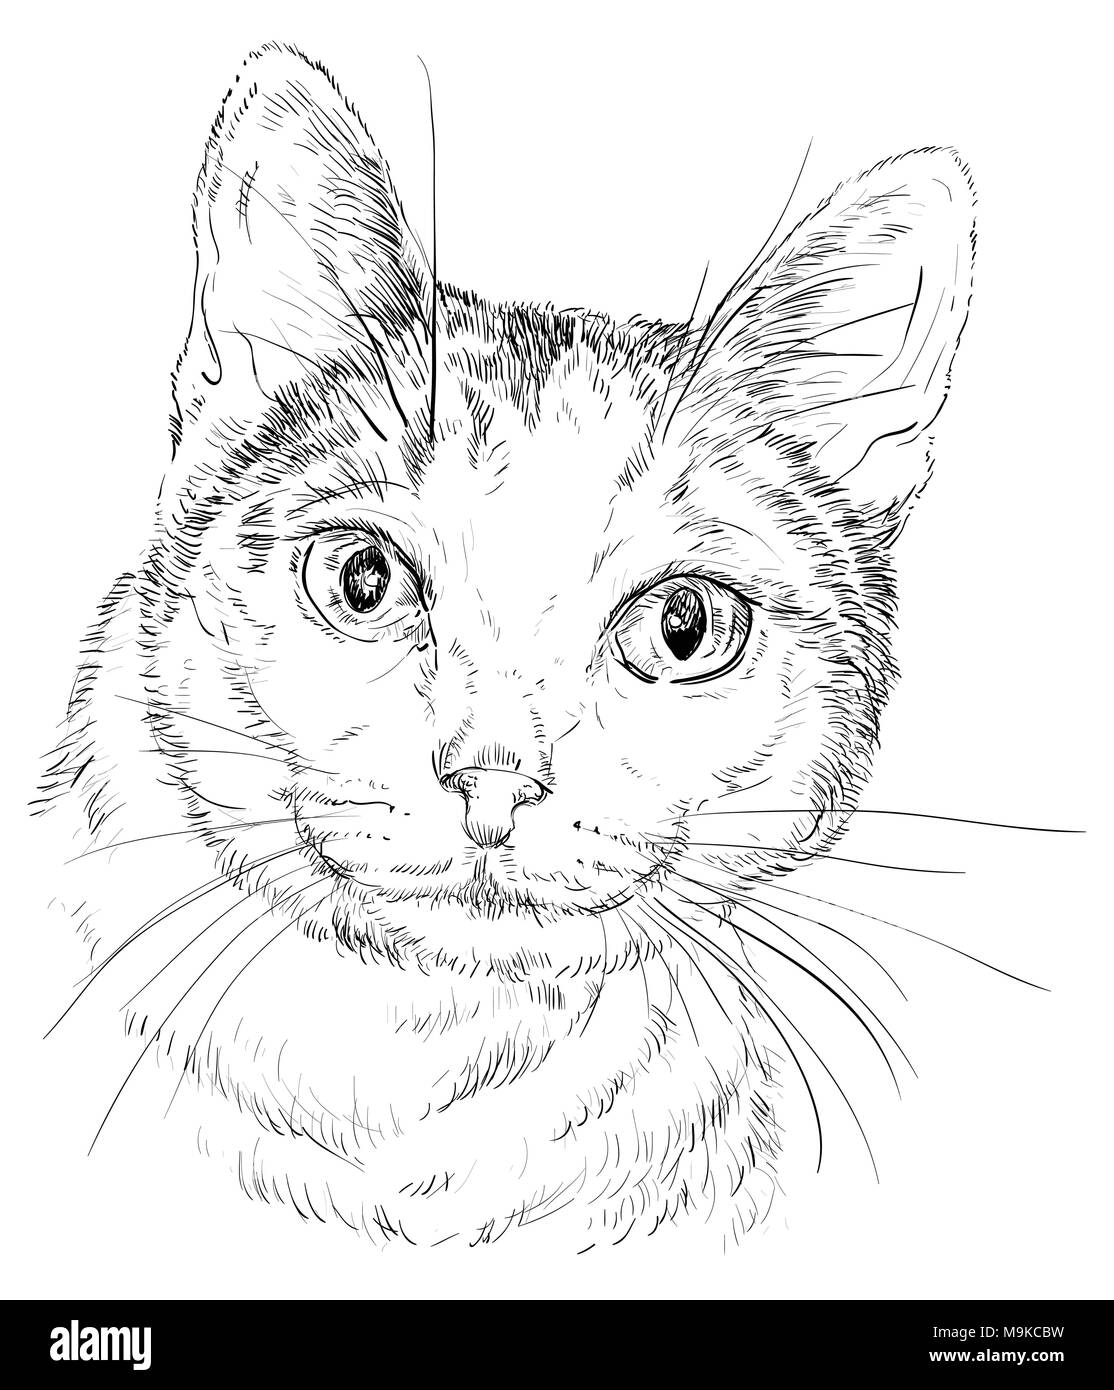 Vektor Kontur monochrome Portrait von neugierig Mongrel Katze in der Farbe schwarz. Hand Zeichnung Abbildung isoliert auf weißem Hintergrund Stock Vektor